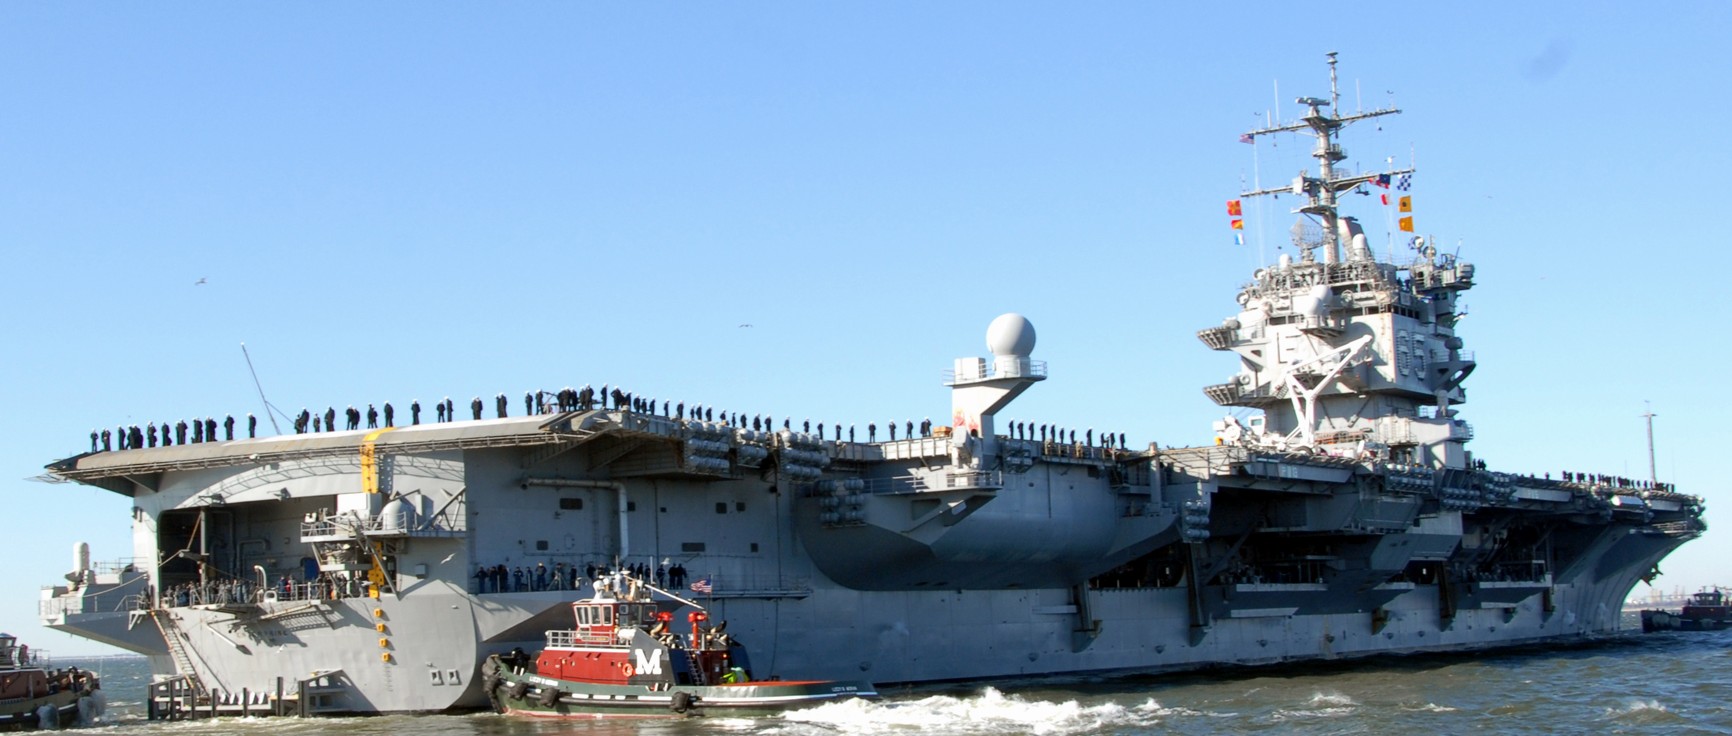 cvn-65 uss enterprise aircraft carrier us navy 30